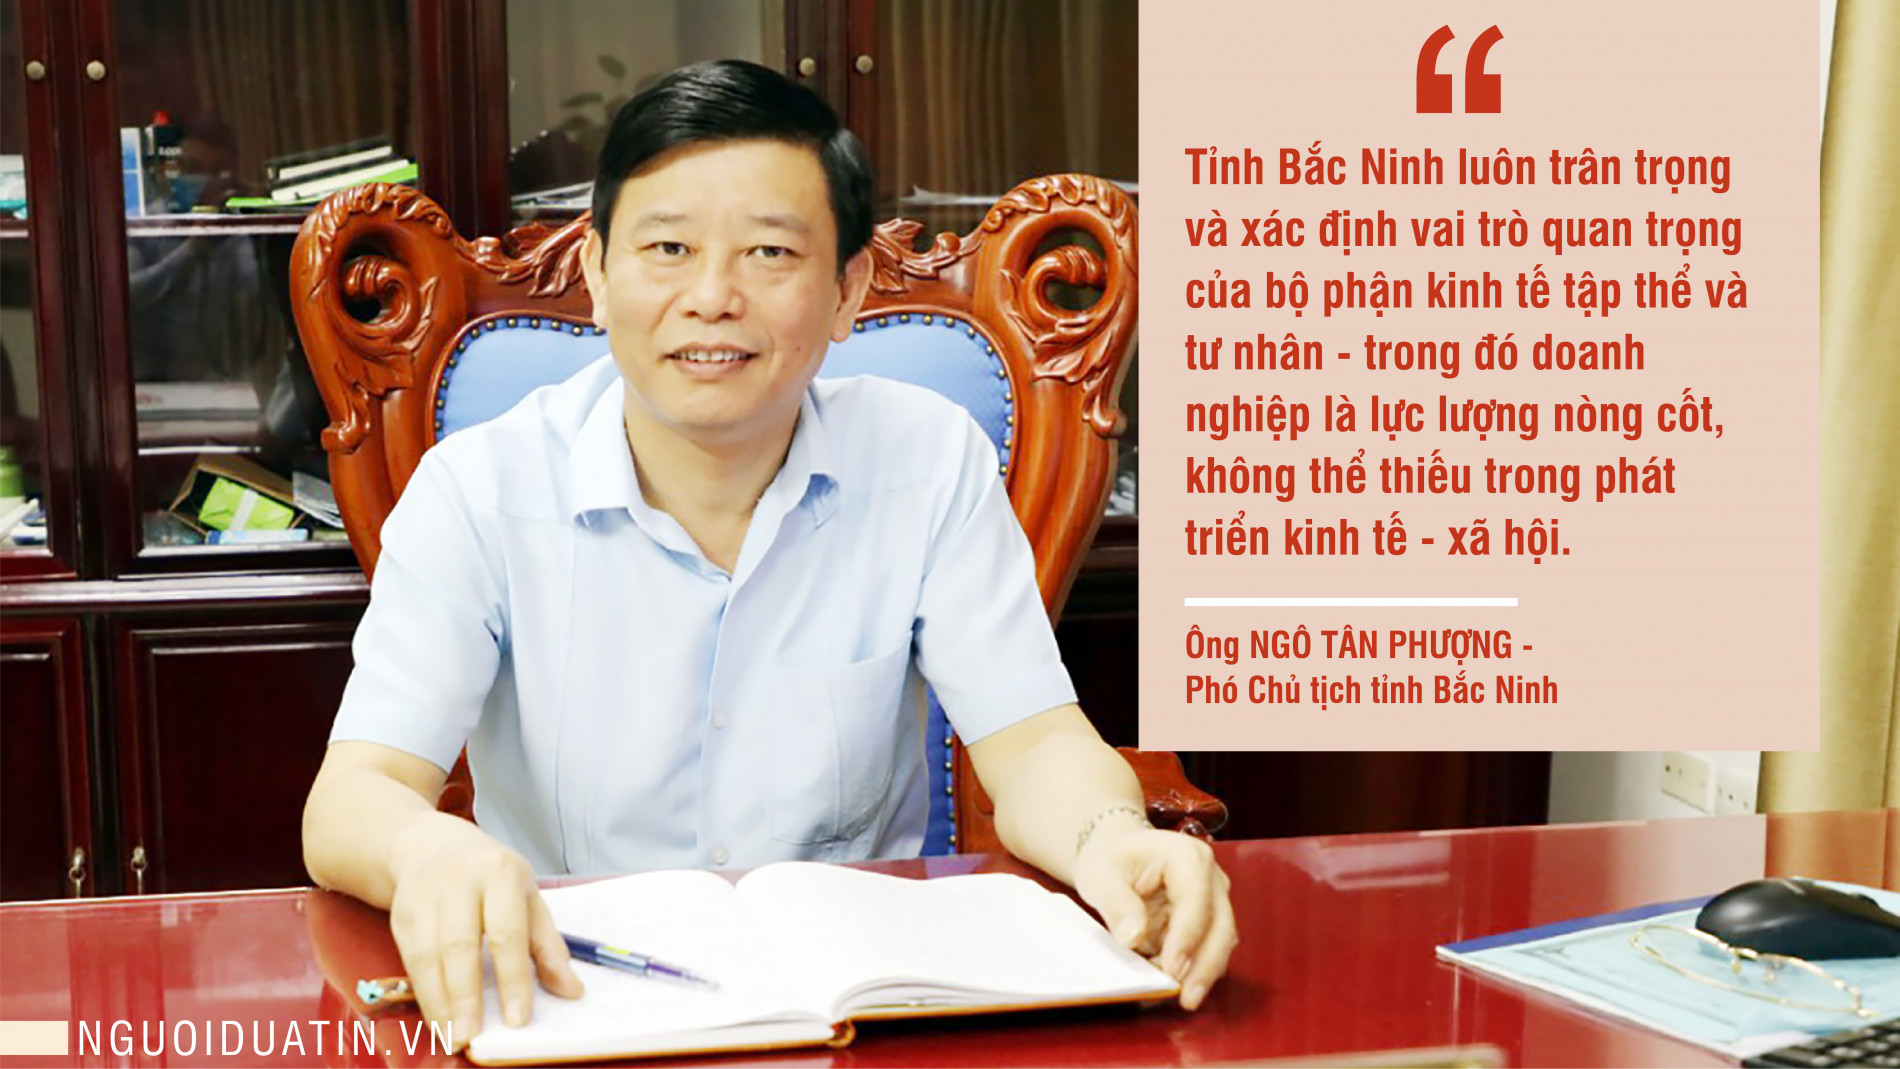 Kinh tế vĩ mô - PCT tỉnh Bắc Ninh chia sẻ về 'hành trang' để khôi phục kinh tế (Hình 3).